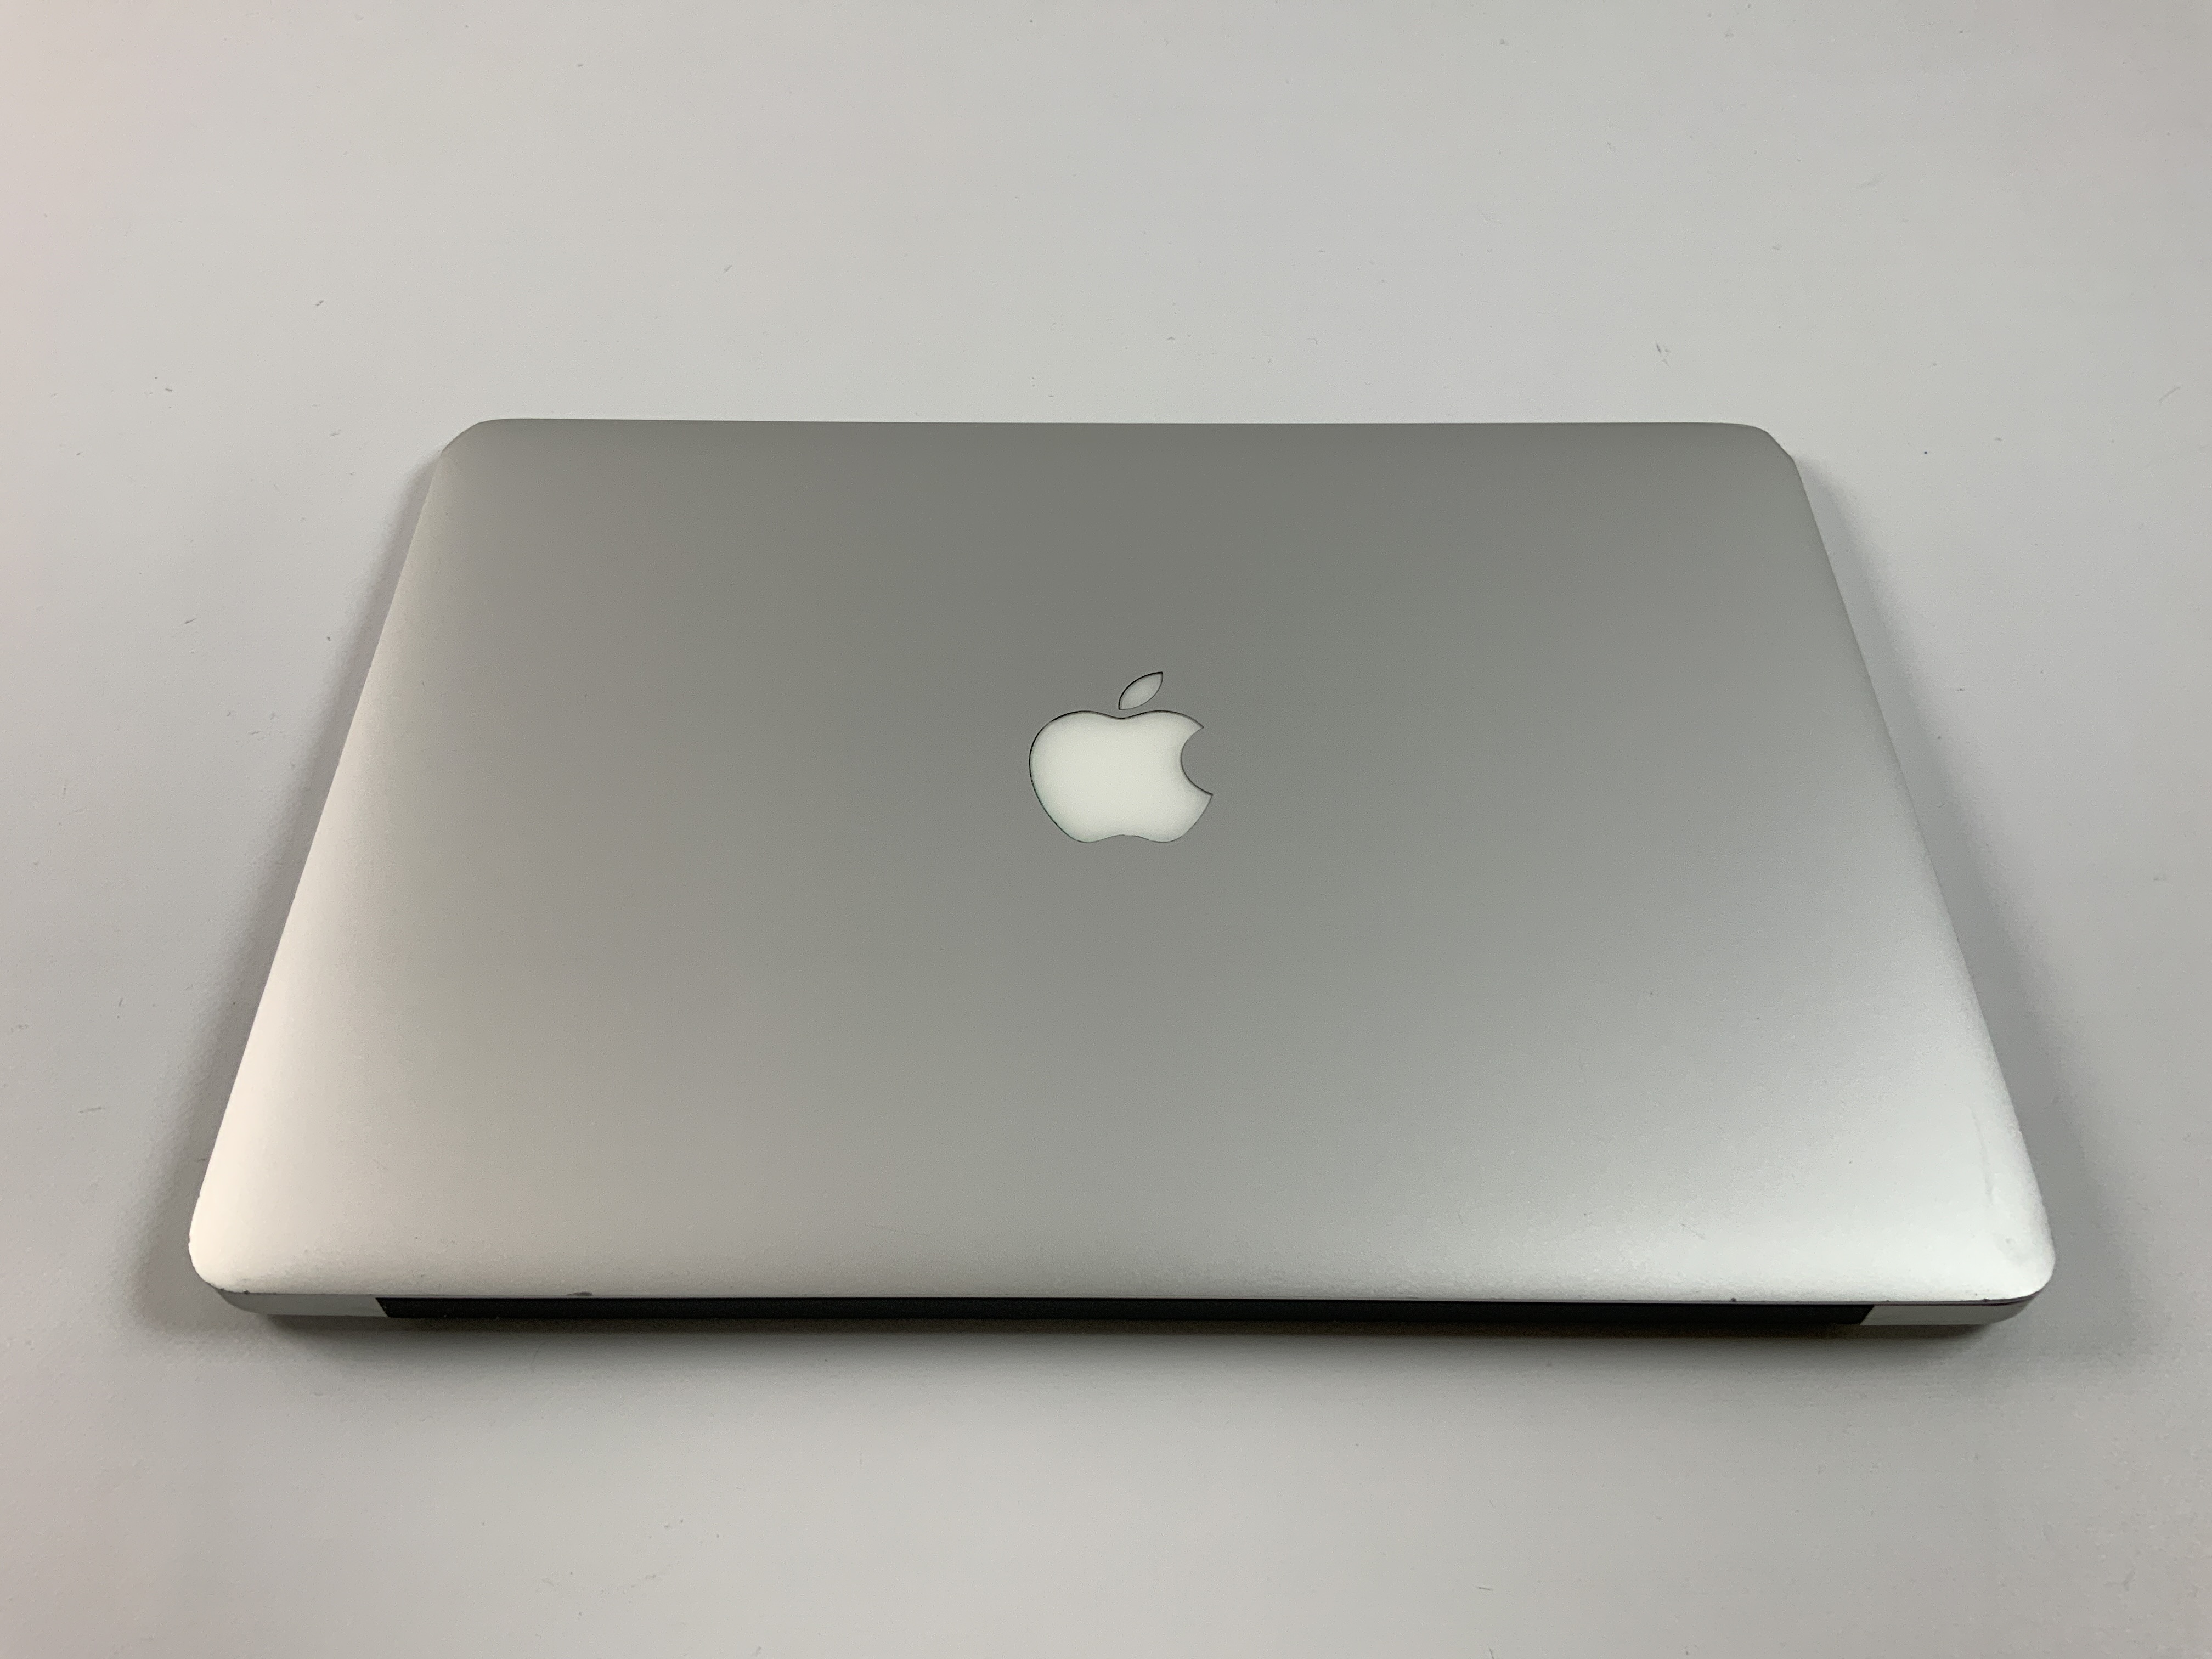 MacBook Air 13" Mid 2017 (Intel Core i5 1.8 GHz 8 GB RAM 128 GB SSD), Intel Core i5 1.8 GHz, 8 GB RAM, 128 GB SSD, Afbeelding 3